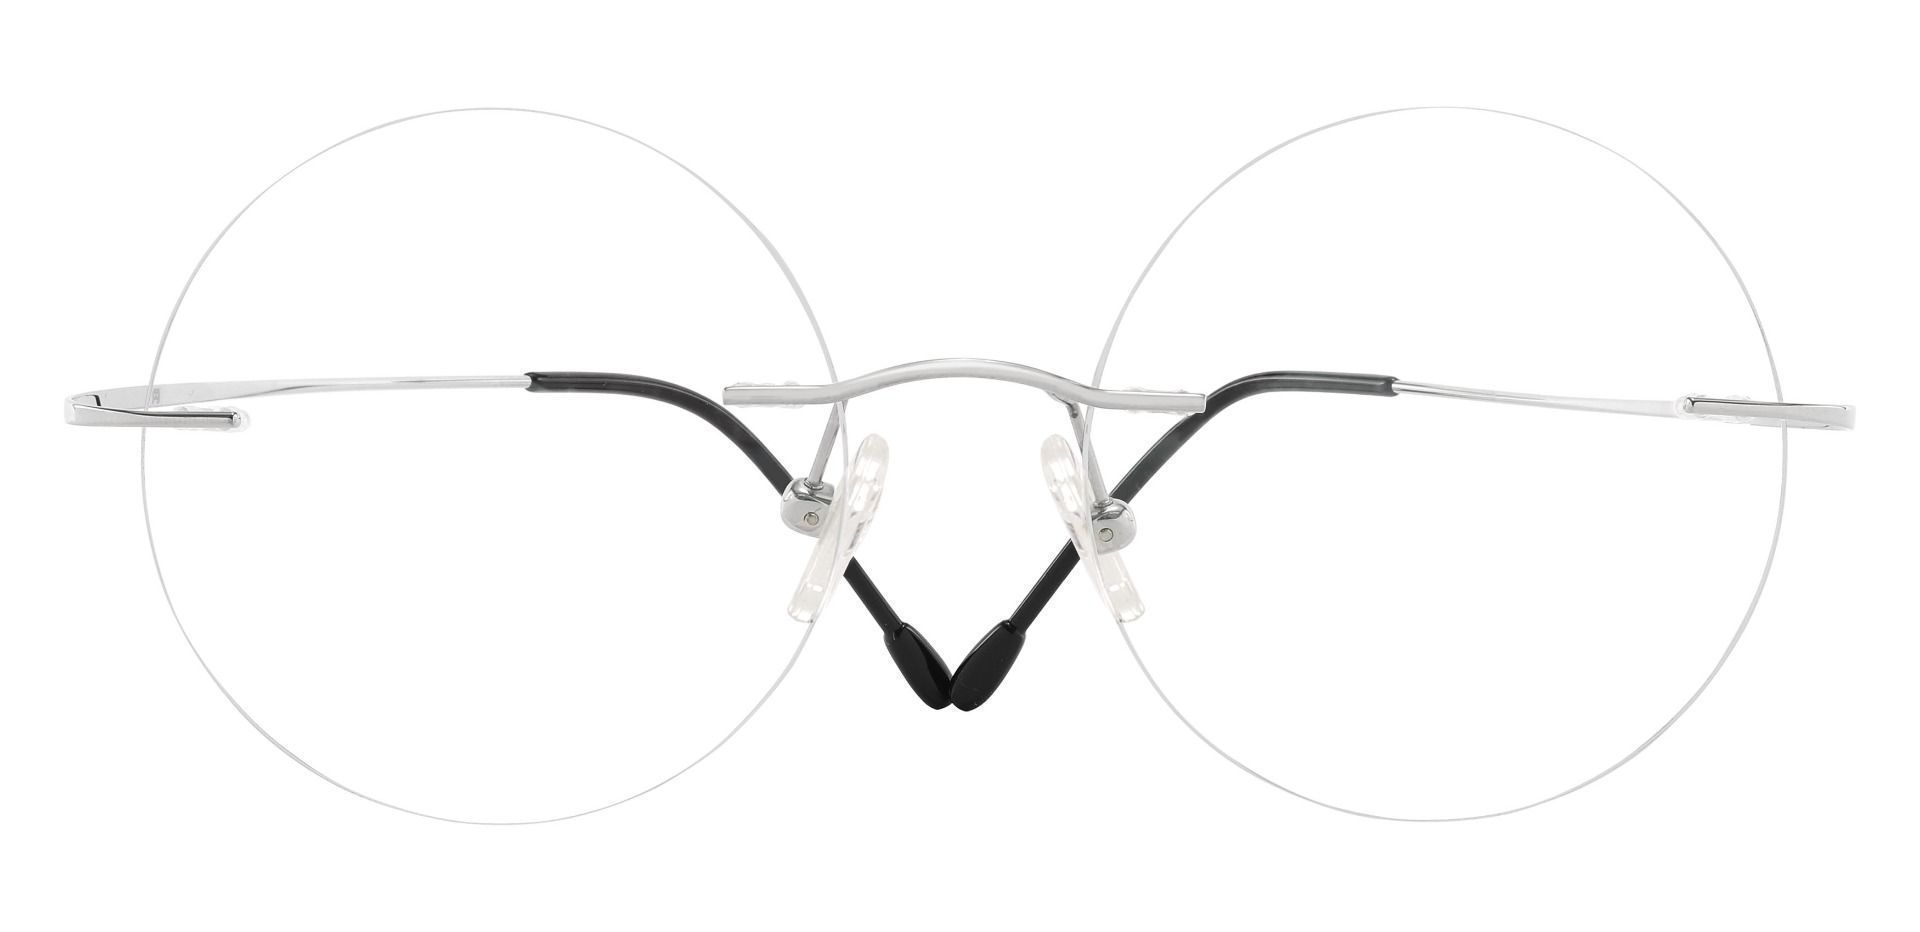 Marengo Rimless Prescription Glasses - Silver